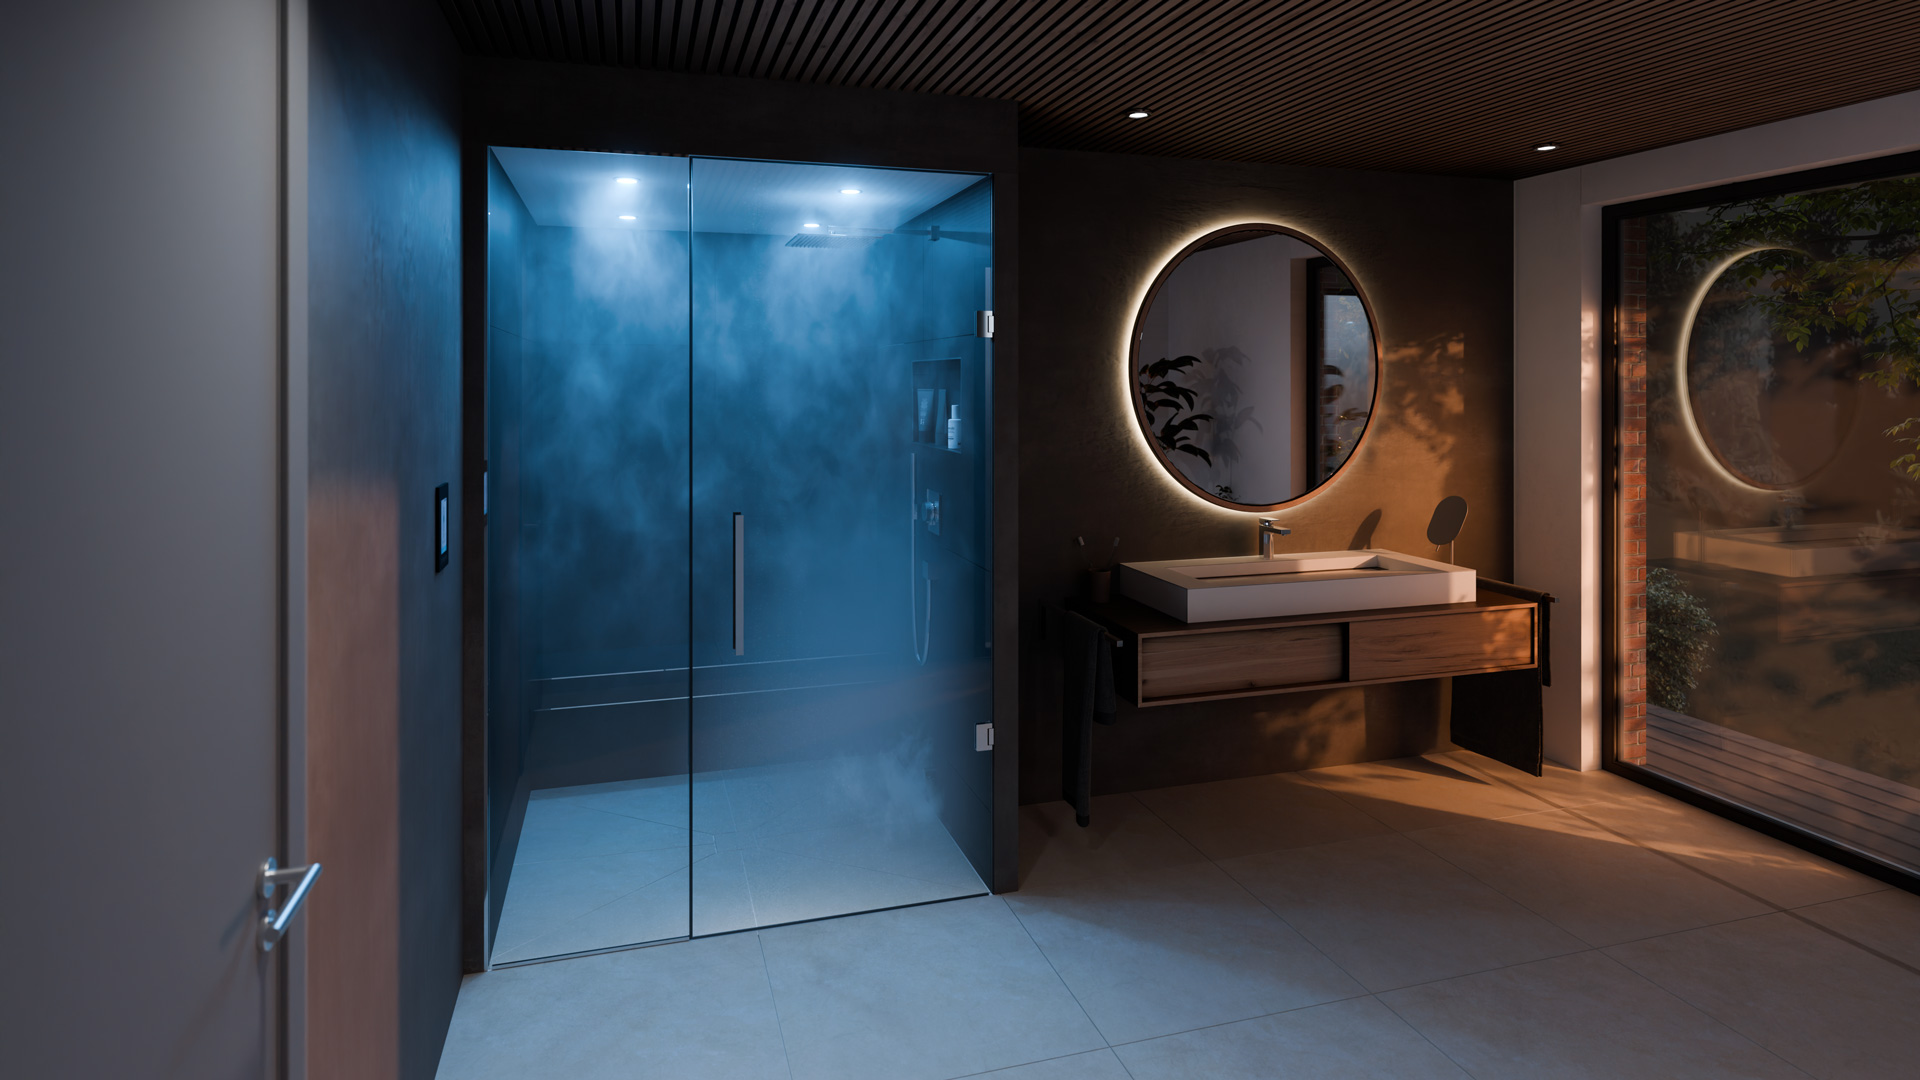 3d rendering studio cgi render dampfbad sauna glaswand fliesen bad badezimmer waschbecken fenster wand akustikpanele wellness